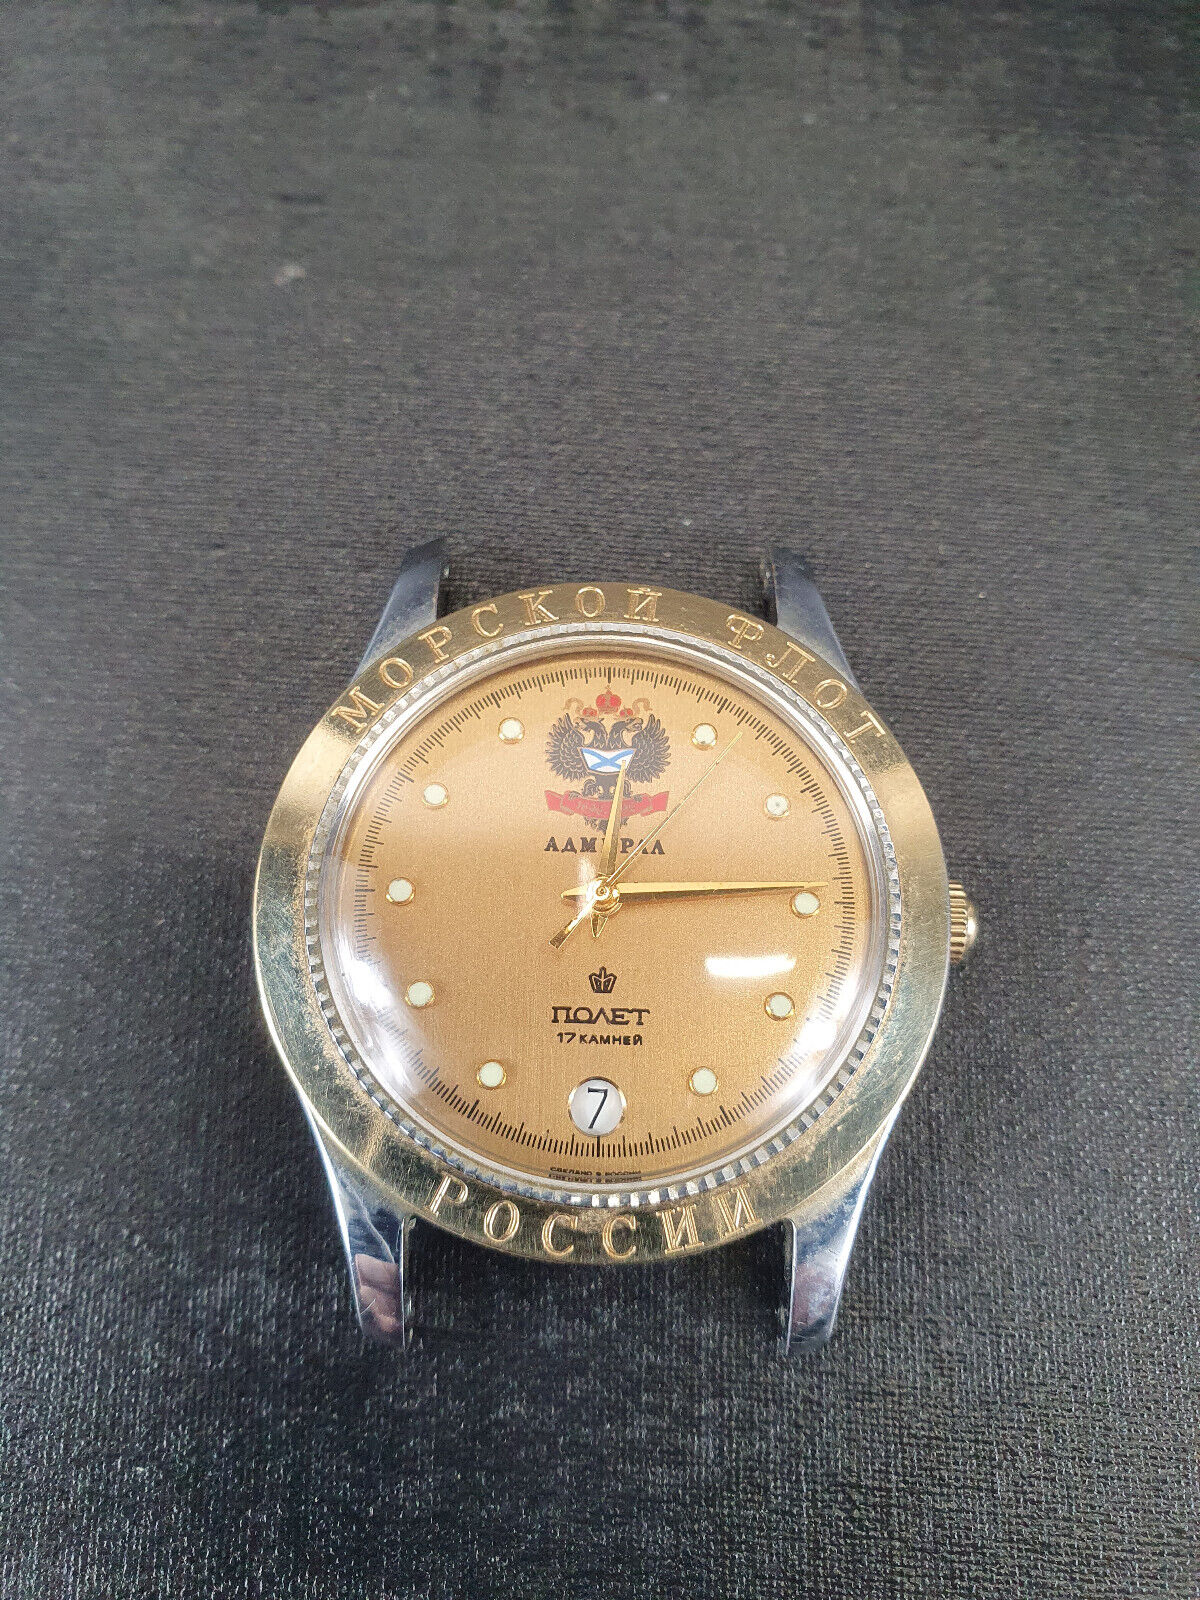 DECK USSR Marine Chronometer Watch POLJOT Kirova 53303 22 jewels | eBay